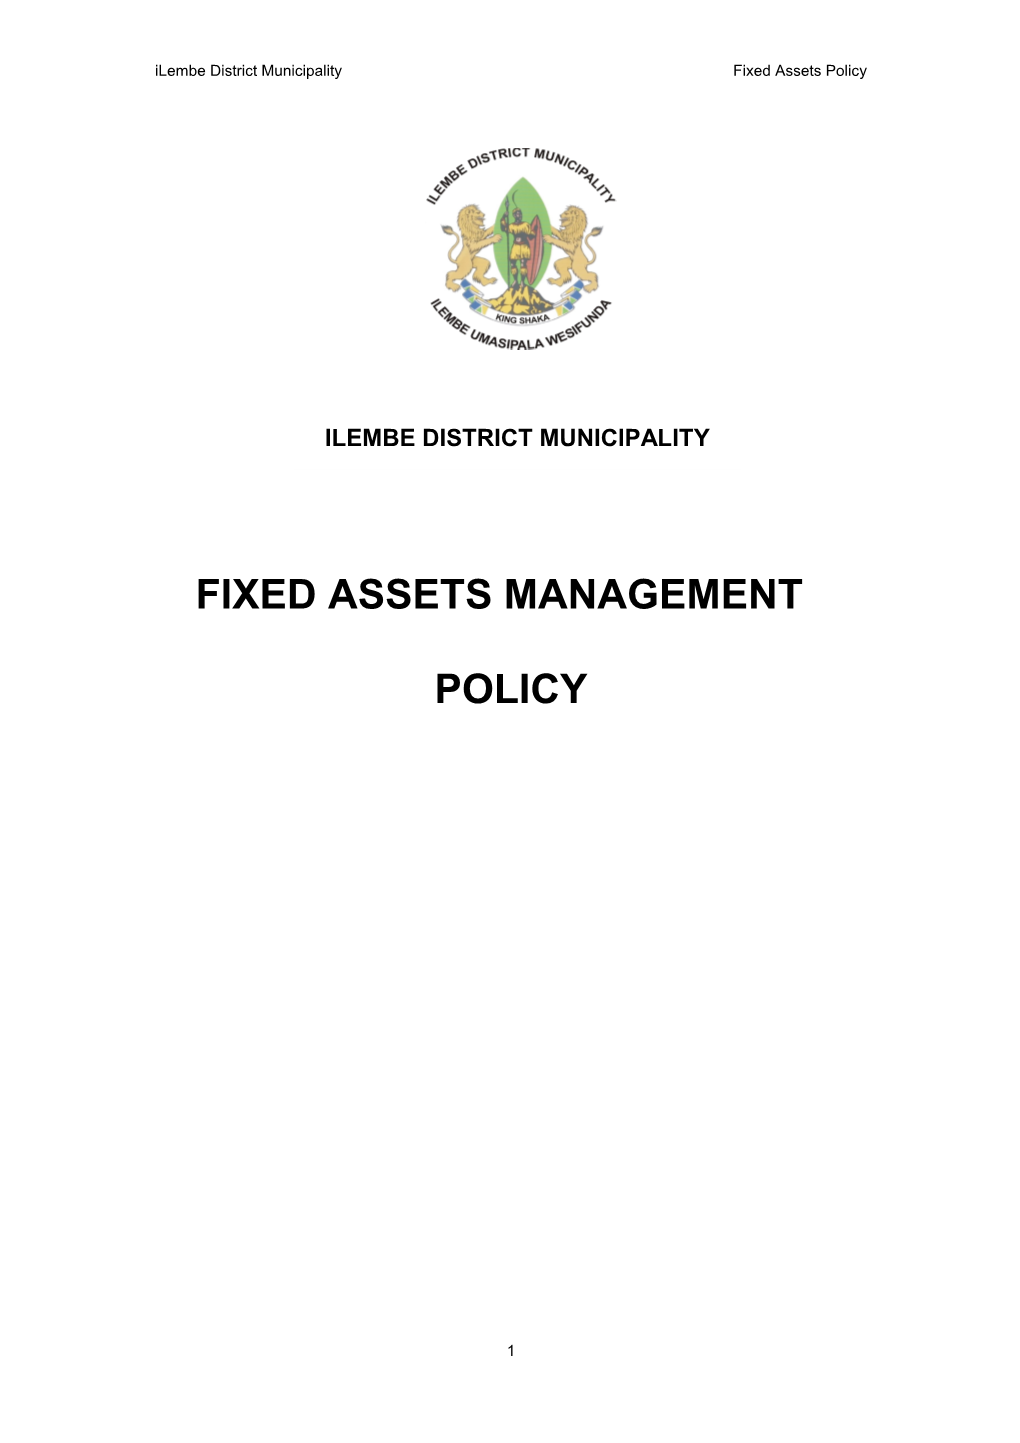 Ilembe District Municipality Fixed Assets Policy